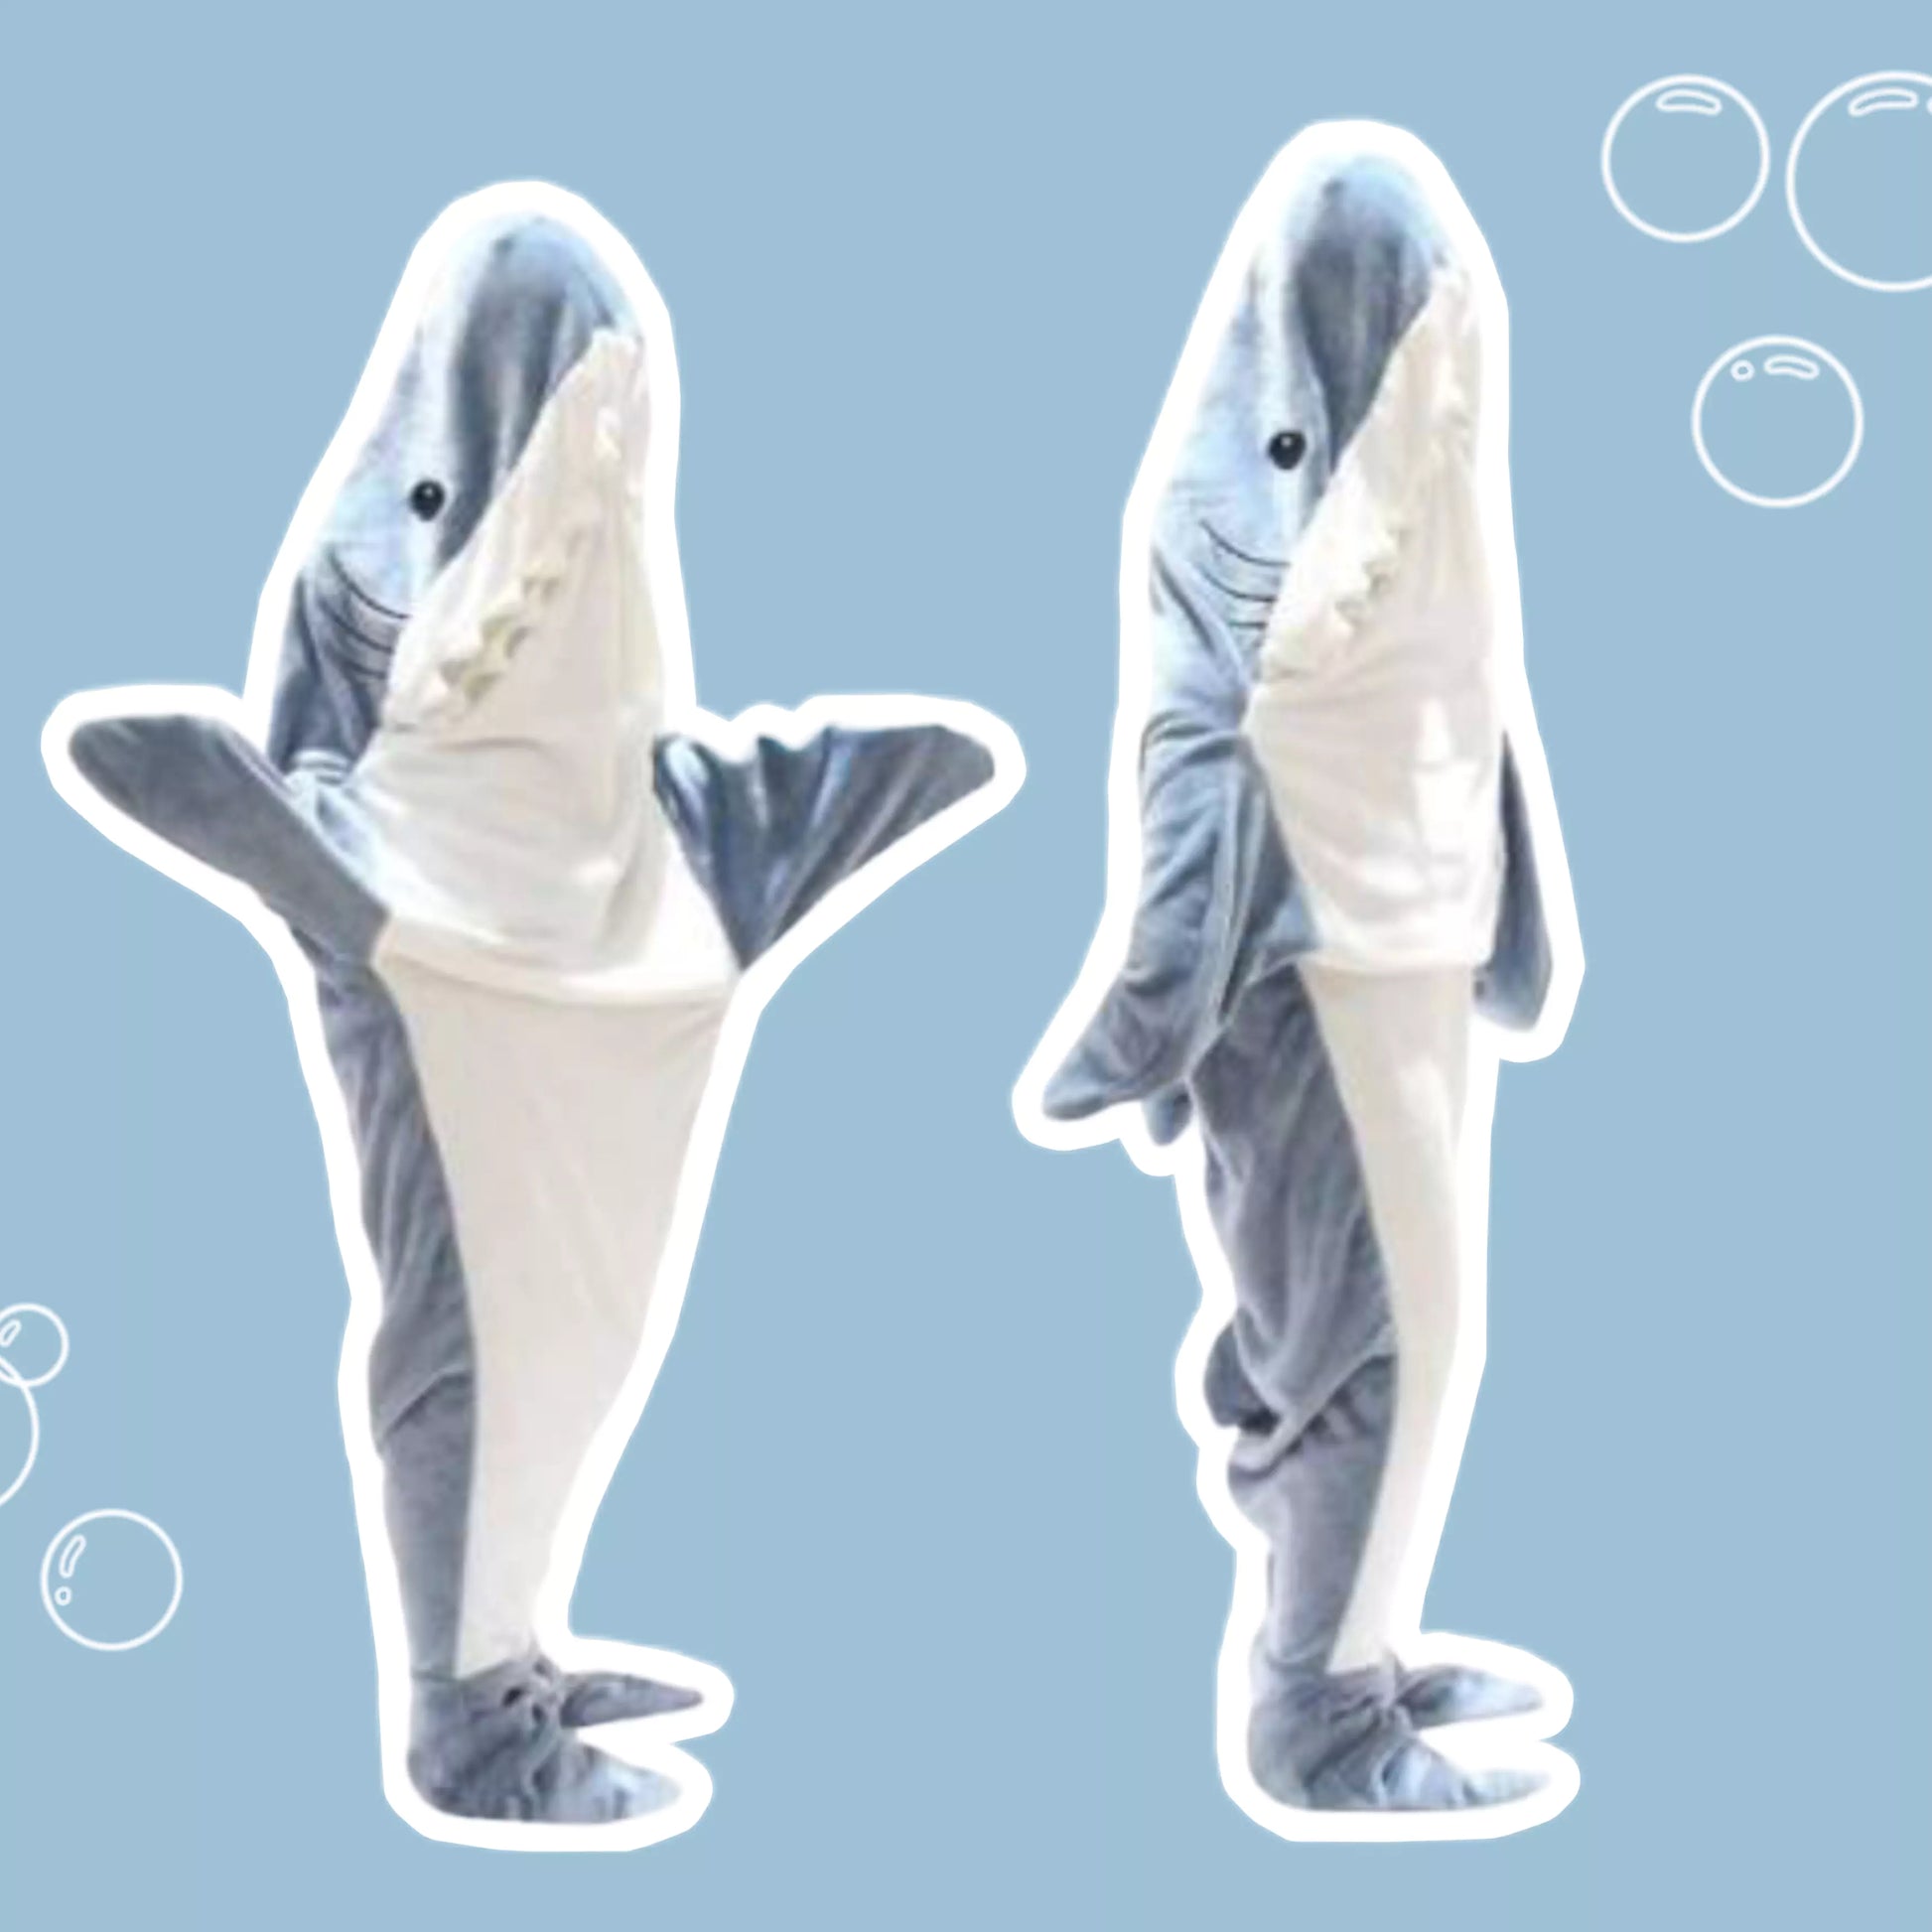 The Shark Blankie – Official Shark Blankie™